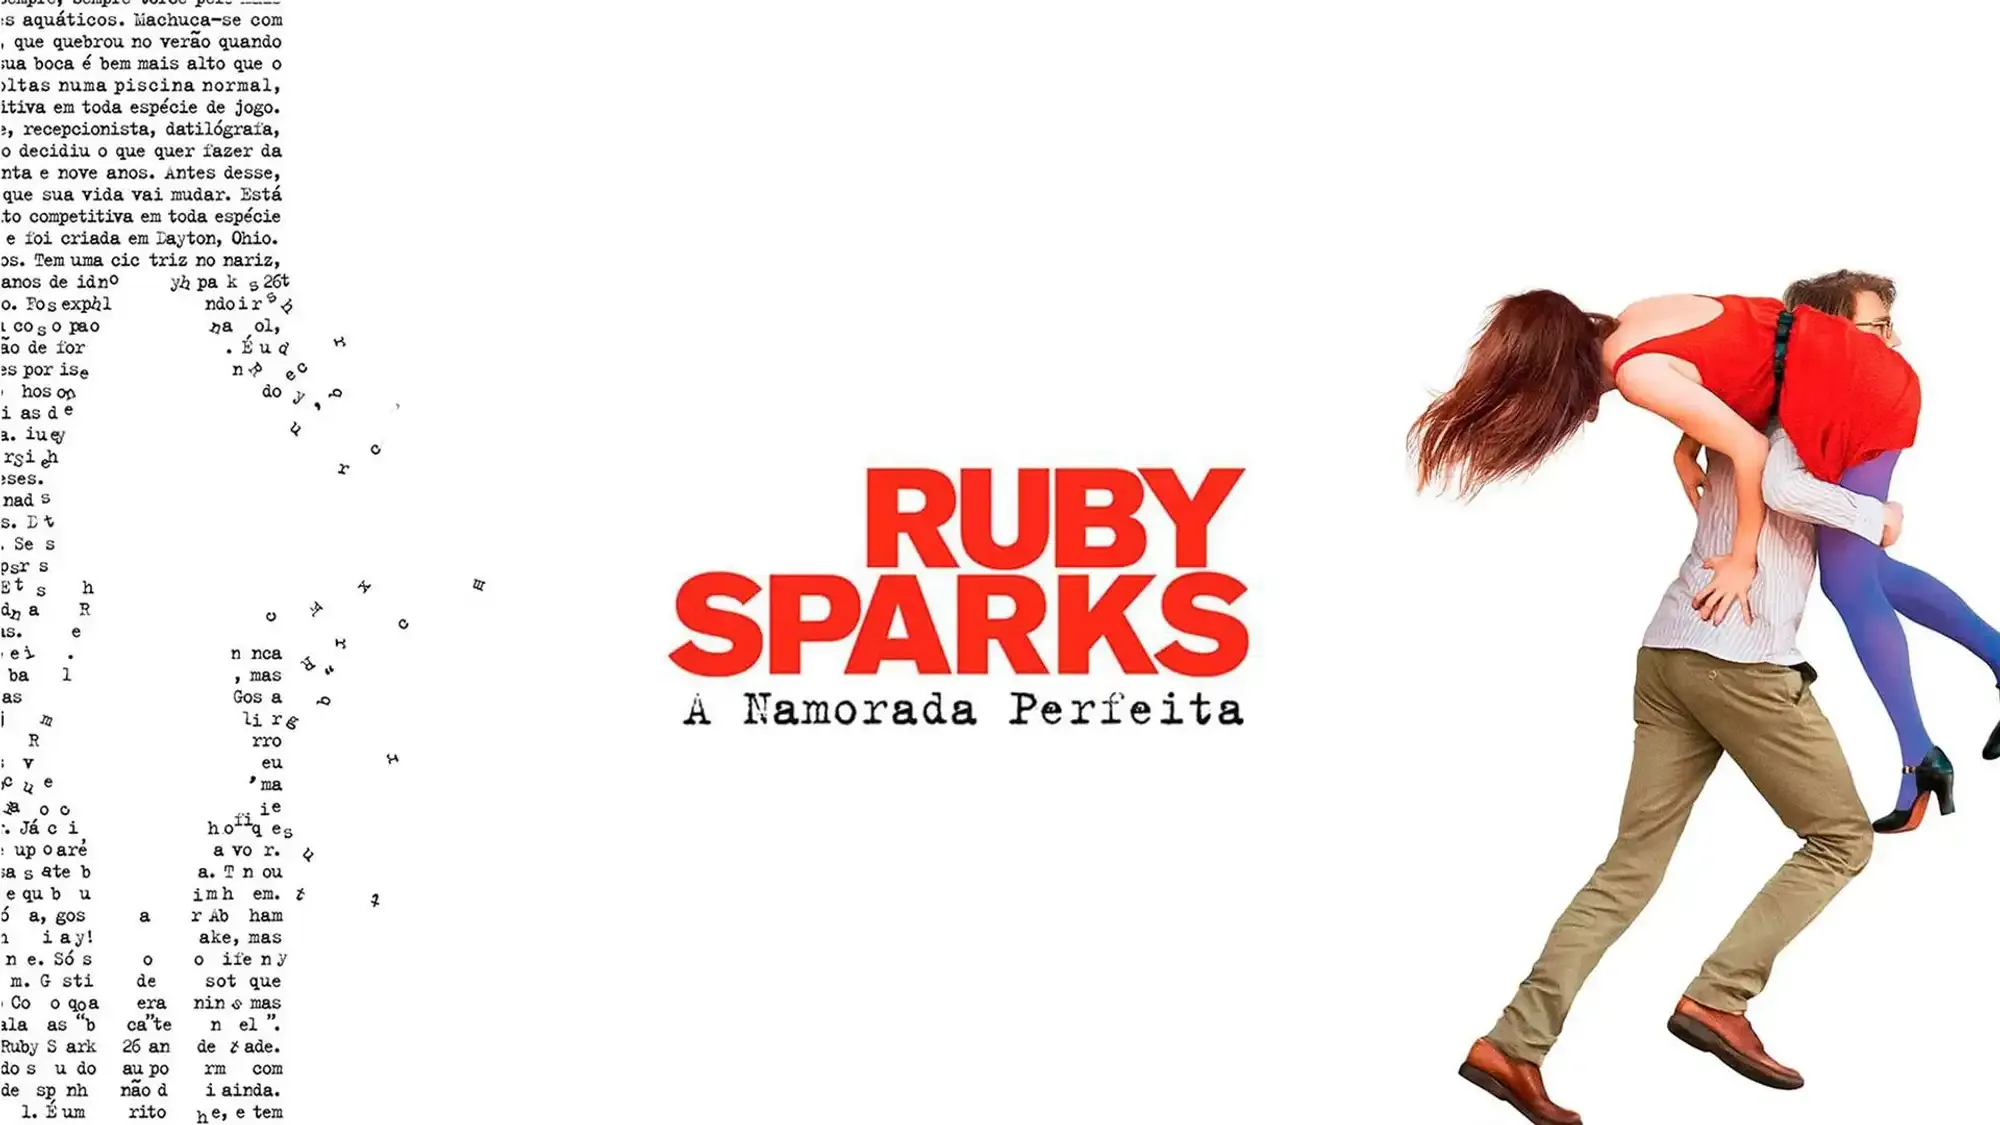 Ruby Sparks movie review